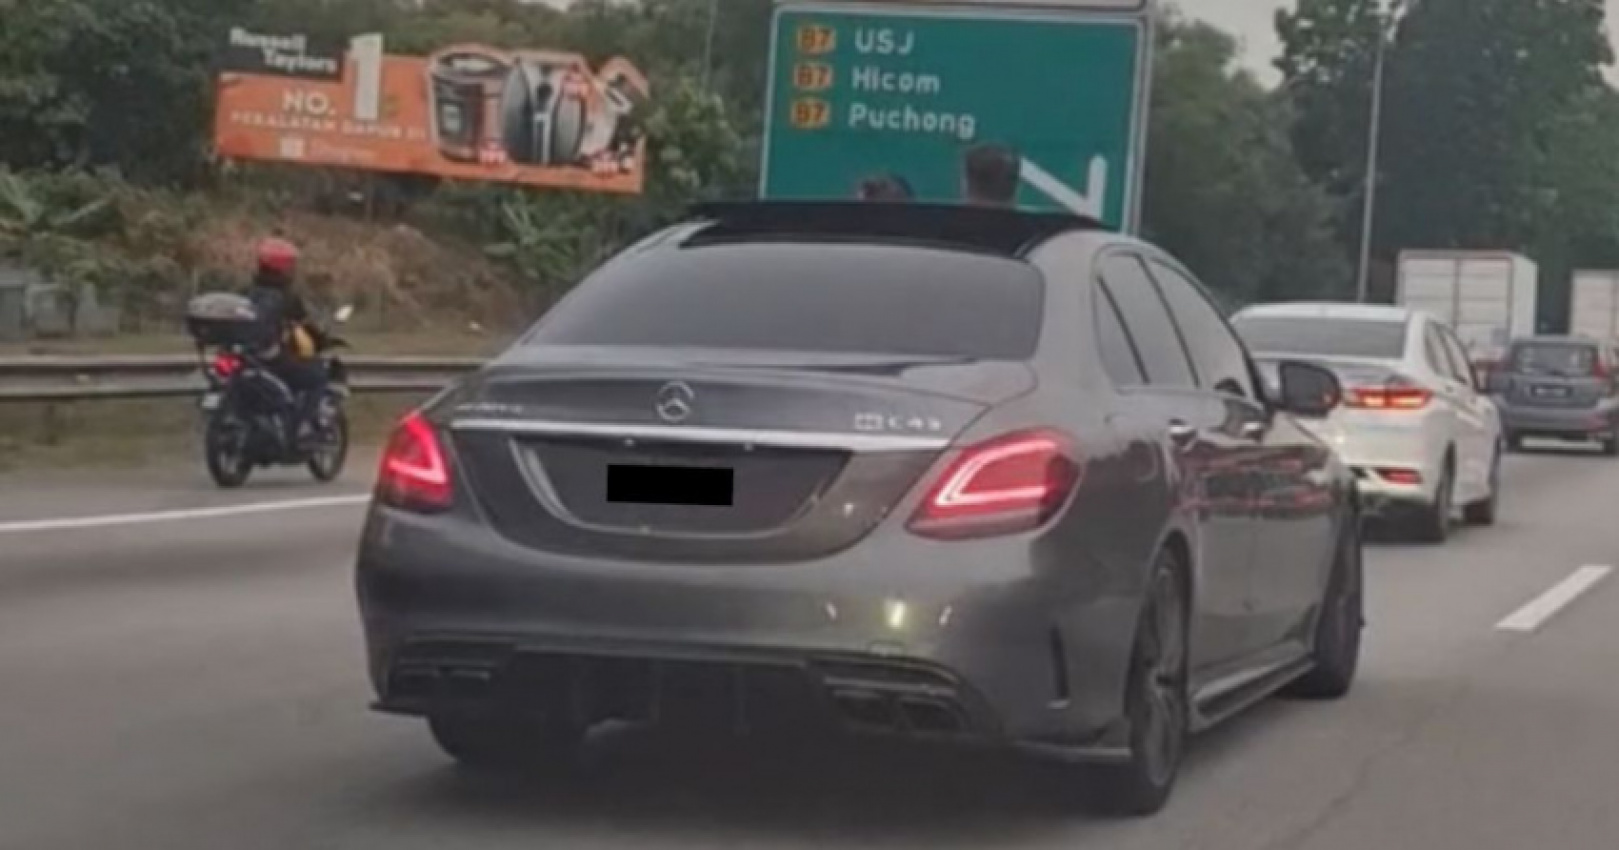 autos, cars, reviews, insights, keluarkan kepala di sunroof, memandu secara berbahaya, mercedes-amg c43, pdrm, undang-undang malaysia, kepala anak keluar sunroof – apa kata undang-undang malaysia?